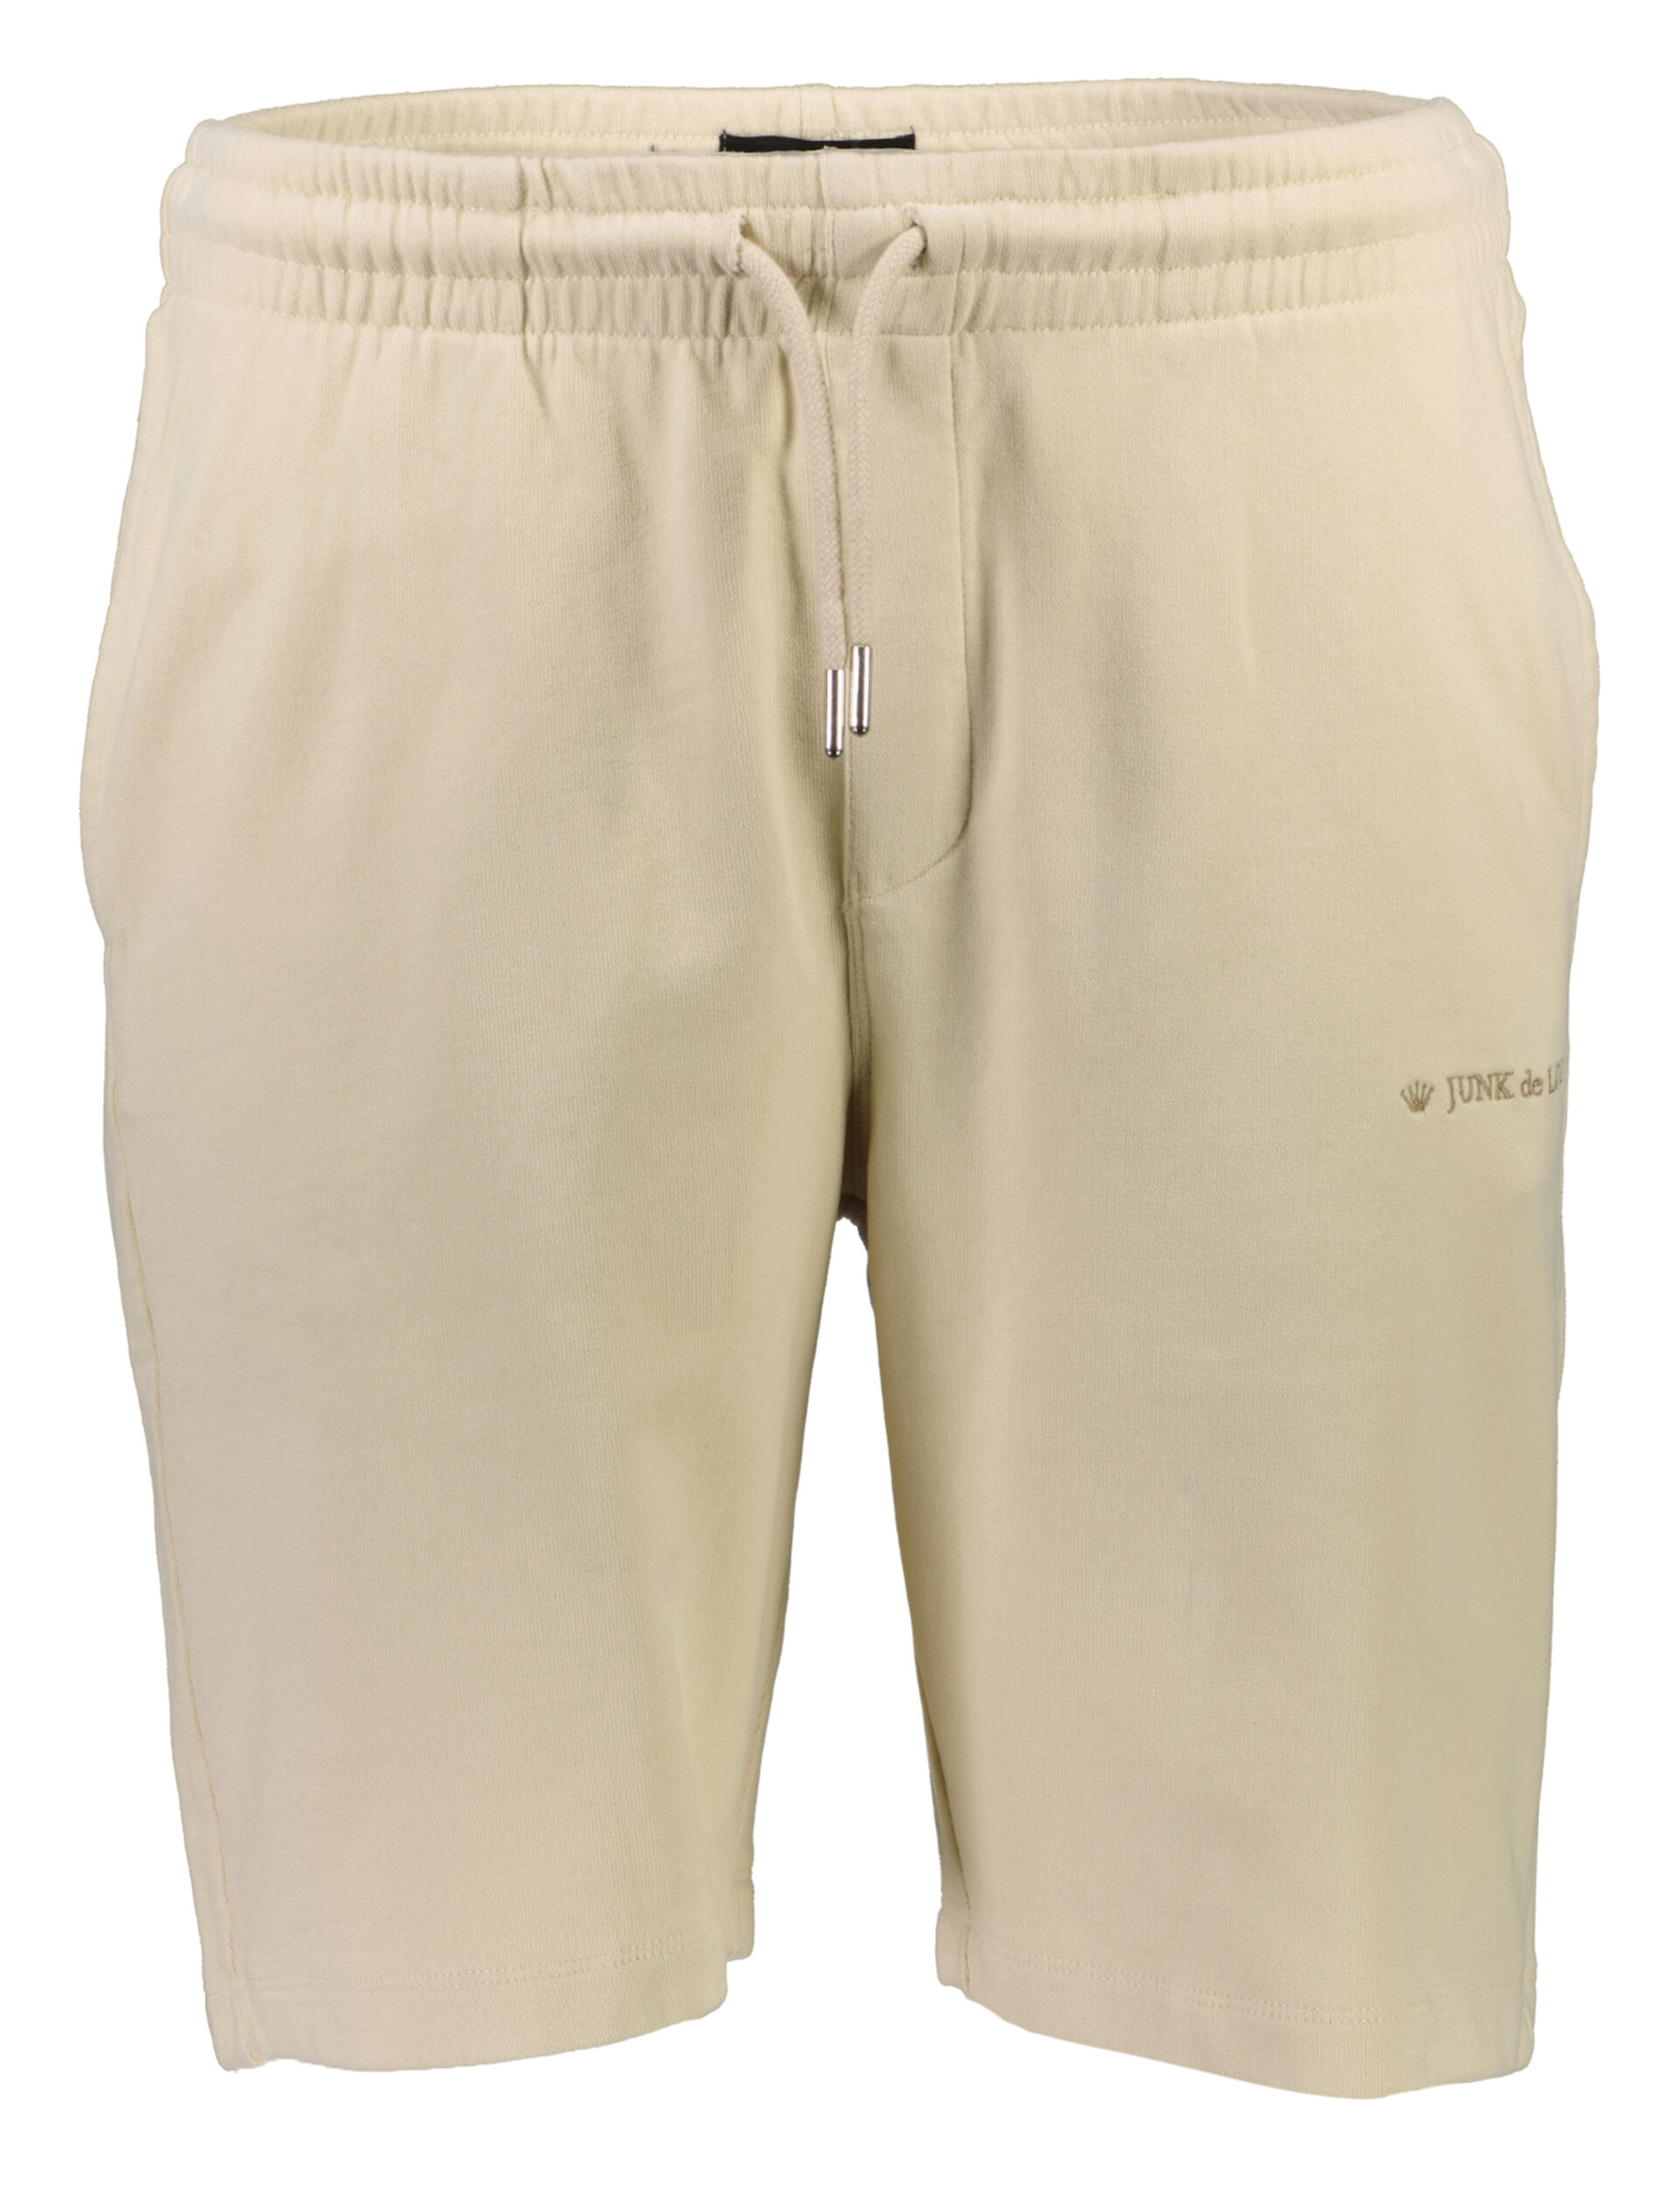 Casual shorts Casual shorts Sand 60-532020